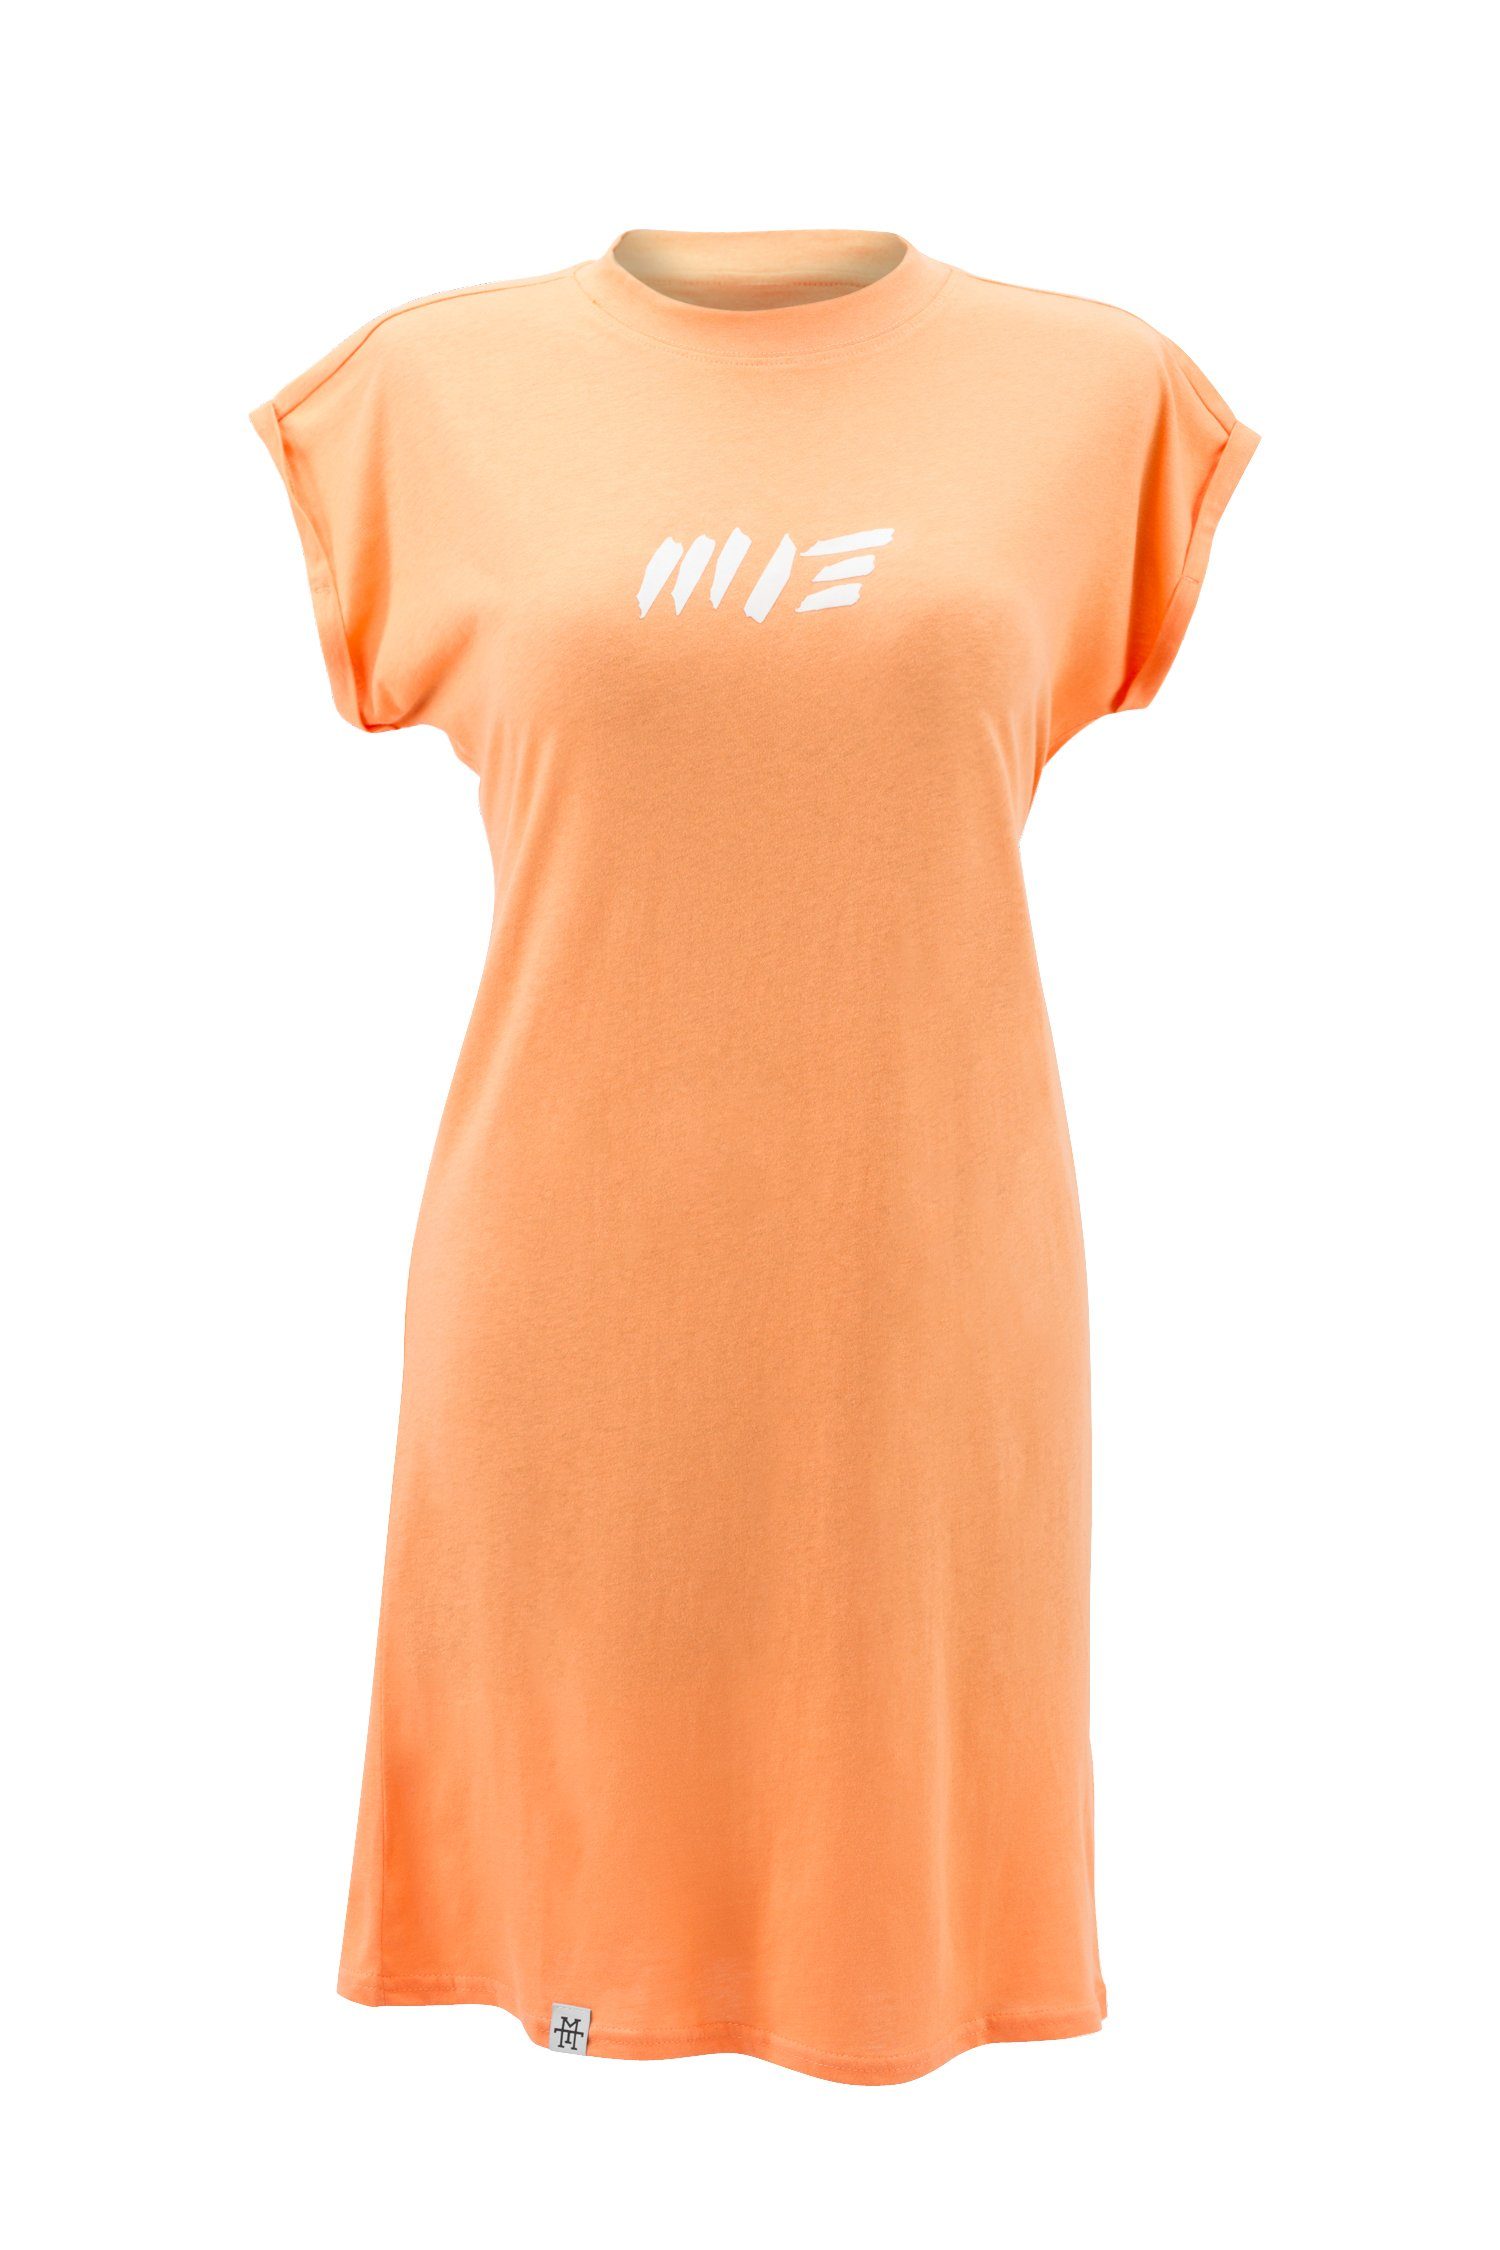 Manufaktur13 Shirtkleid Summer Tee Dress - Sommerkleid, T-Shirt Kleid, Jerseykleid 100% Baumwolle Peach | 